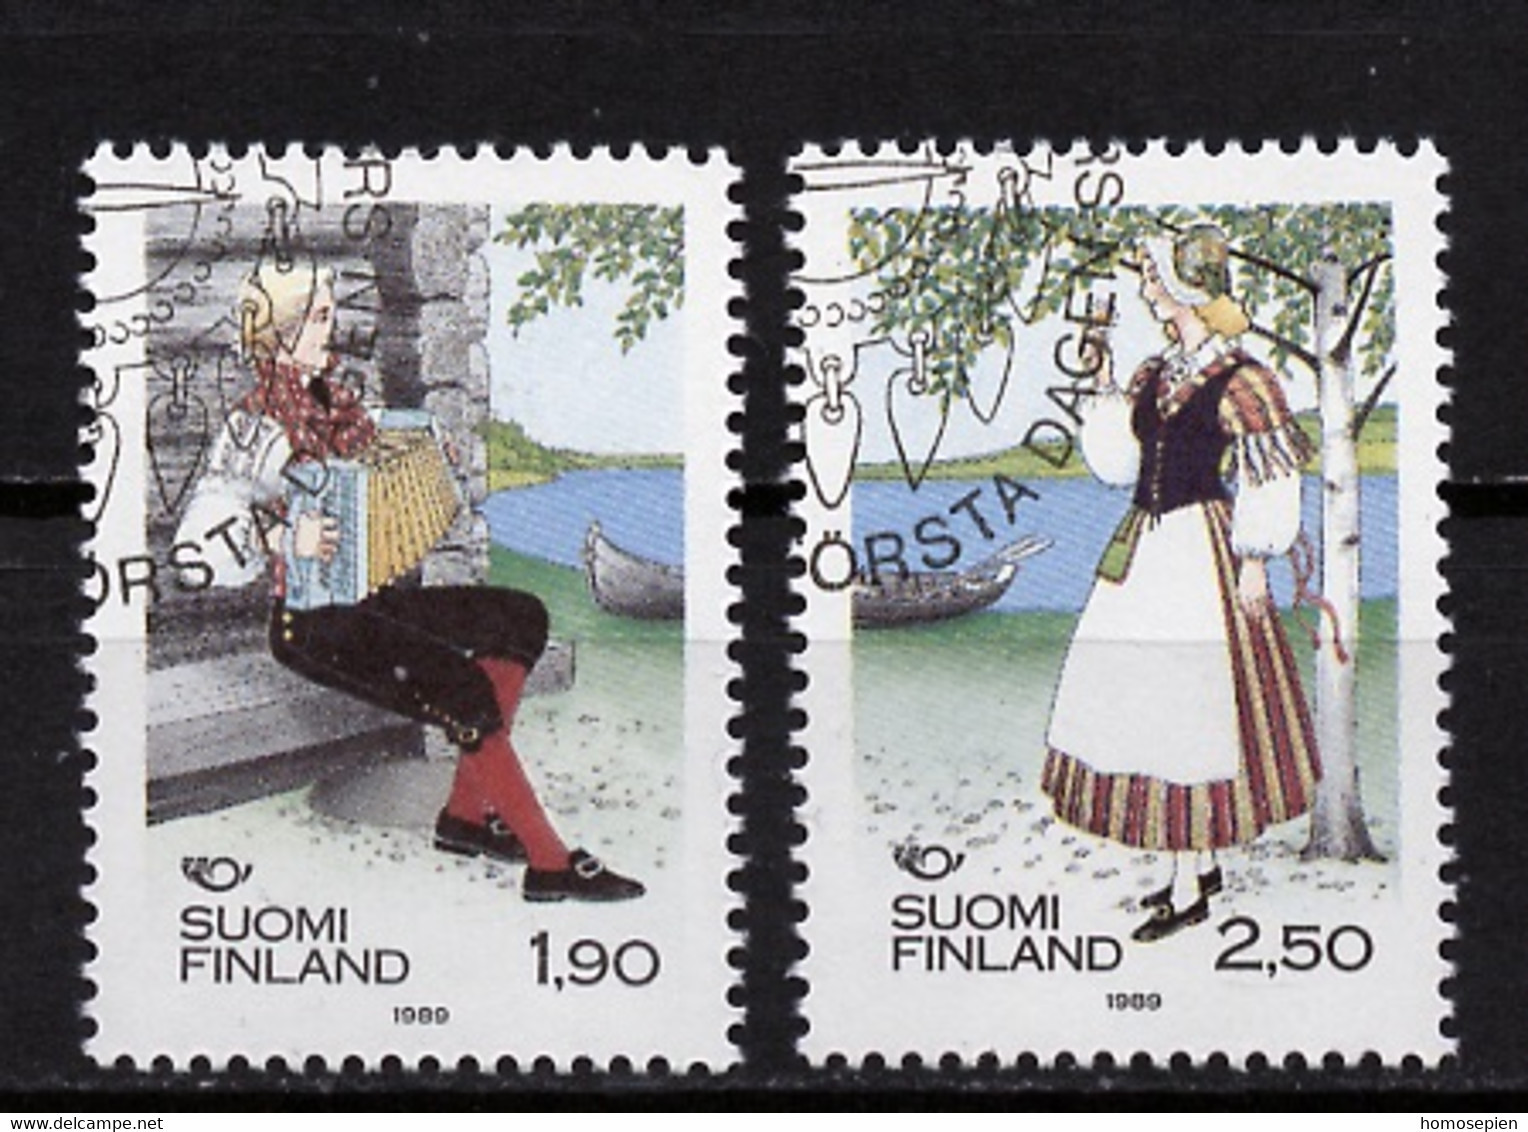 Finlande - Finnland - Finland 1989 Y&T N°1048 à 1049 - Michel N°1084 à 1085 (o) - Norden 89 - Usati